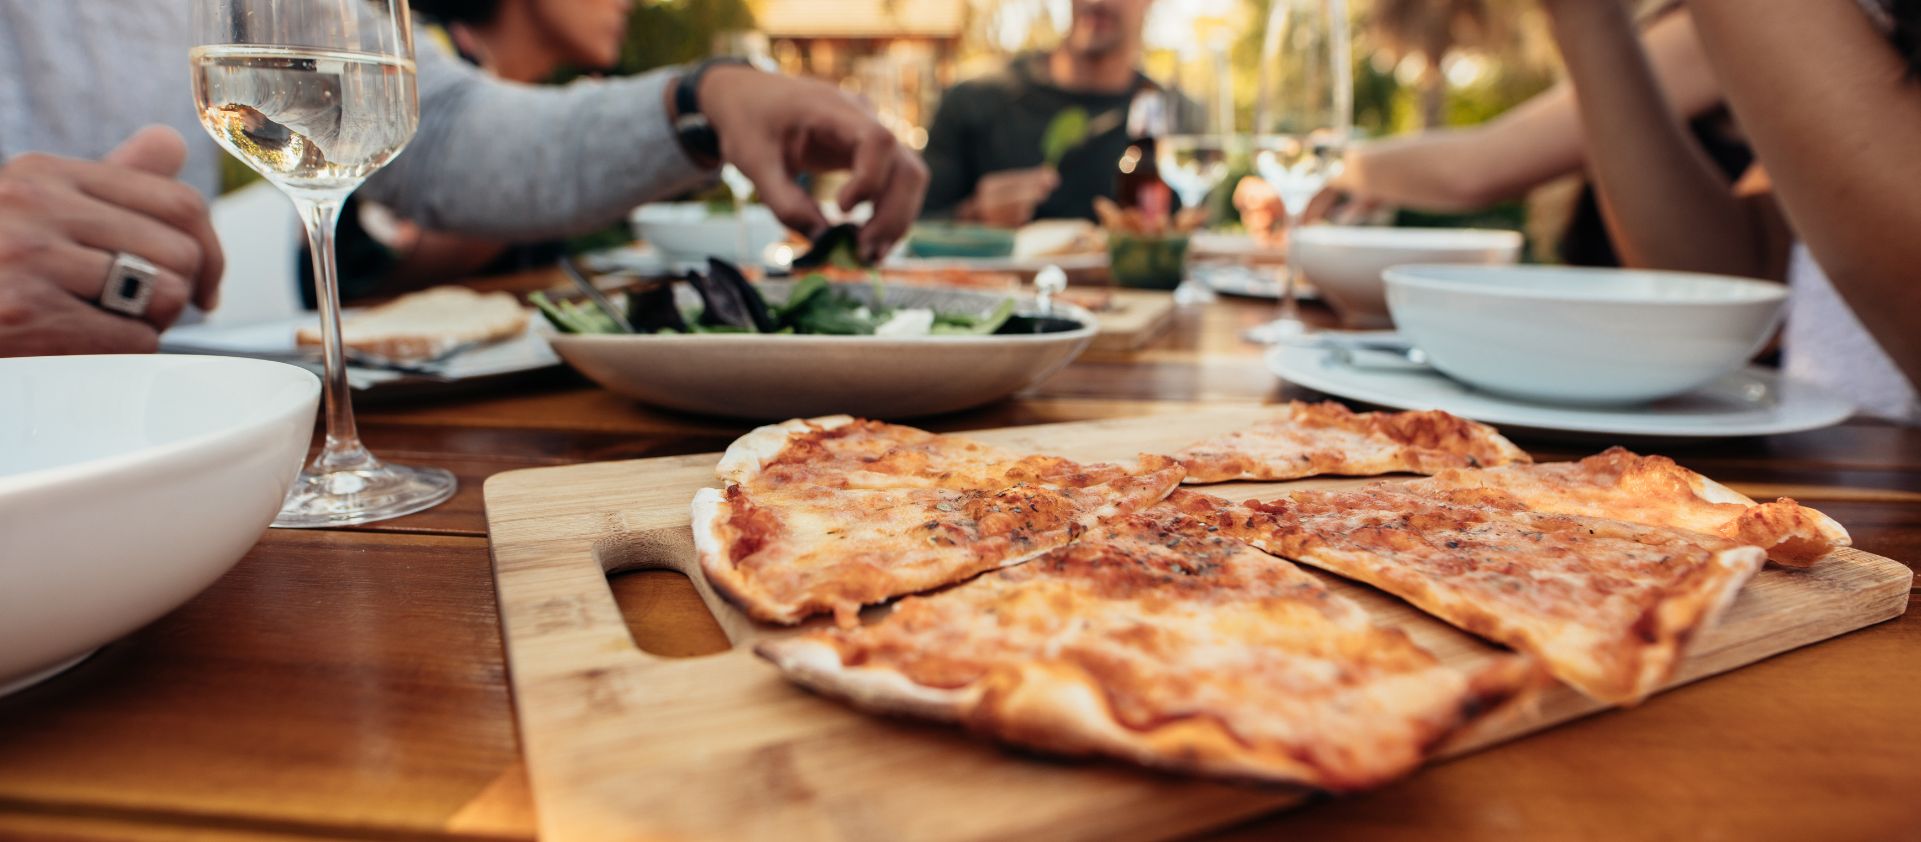 Maridatge de la pizza: existeixen millors opcions que la cervesa o el labrusco